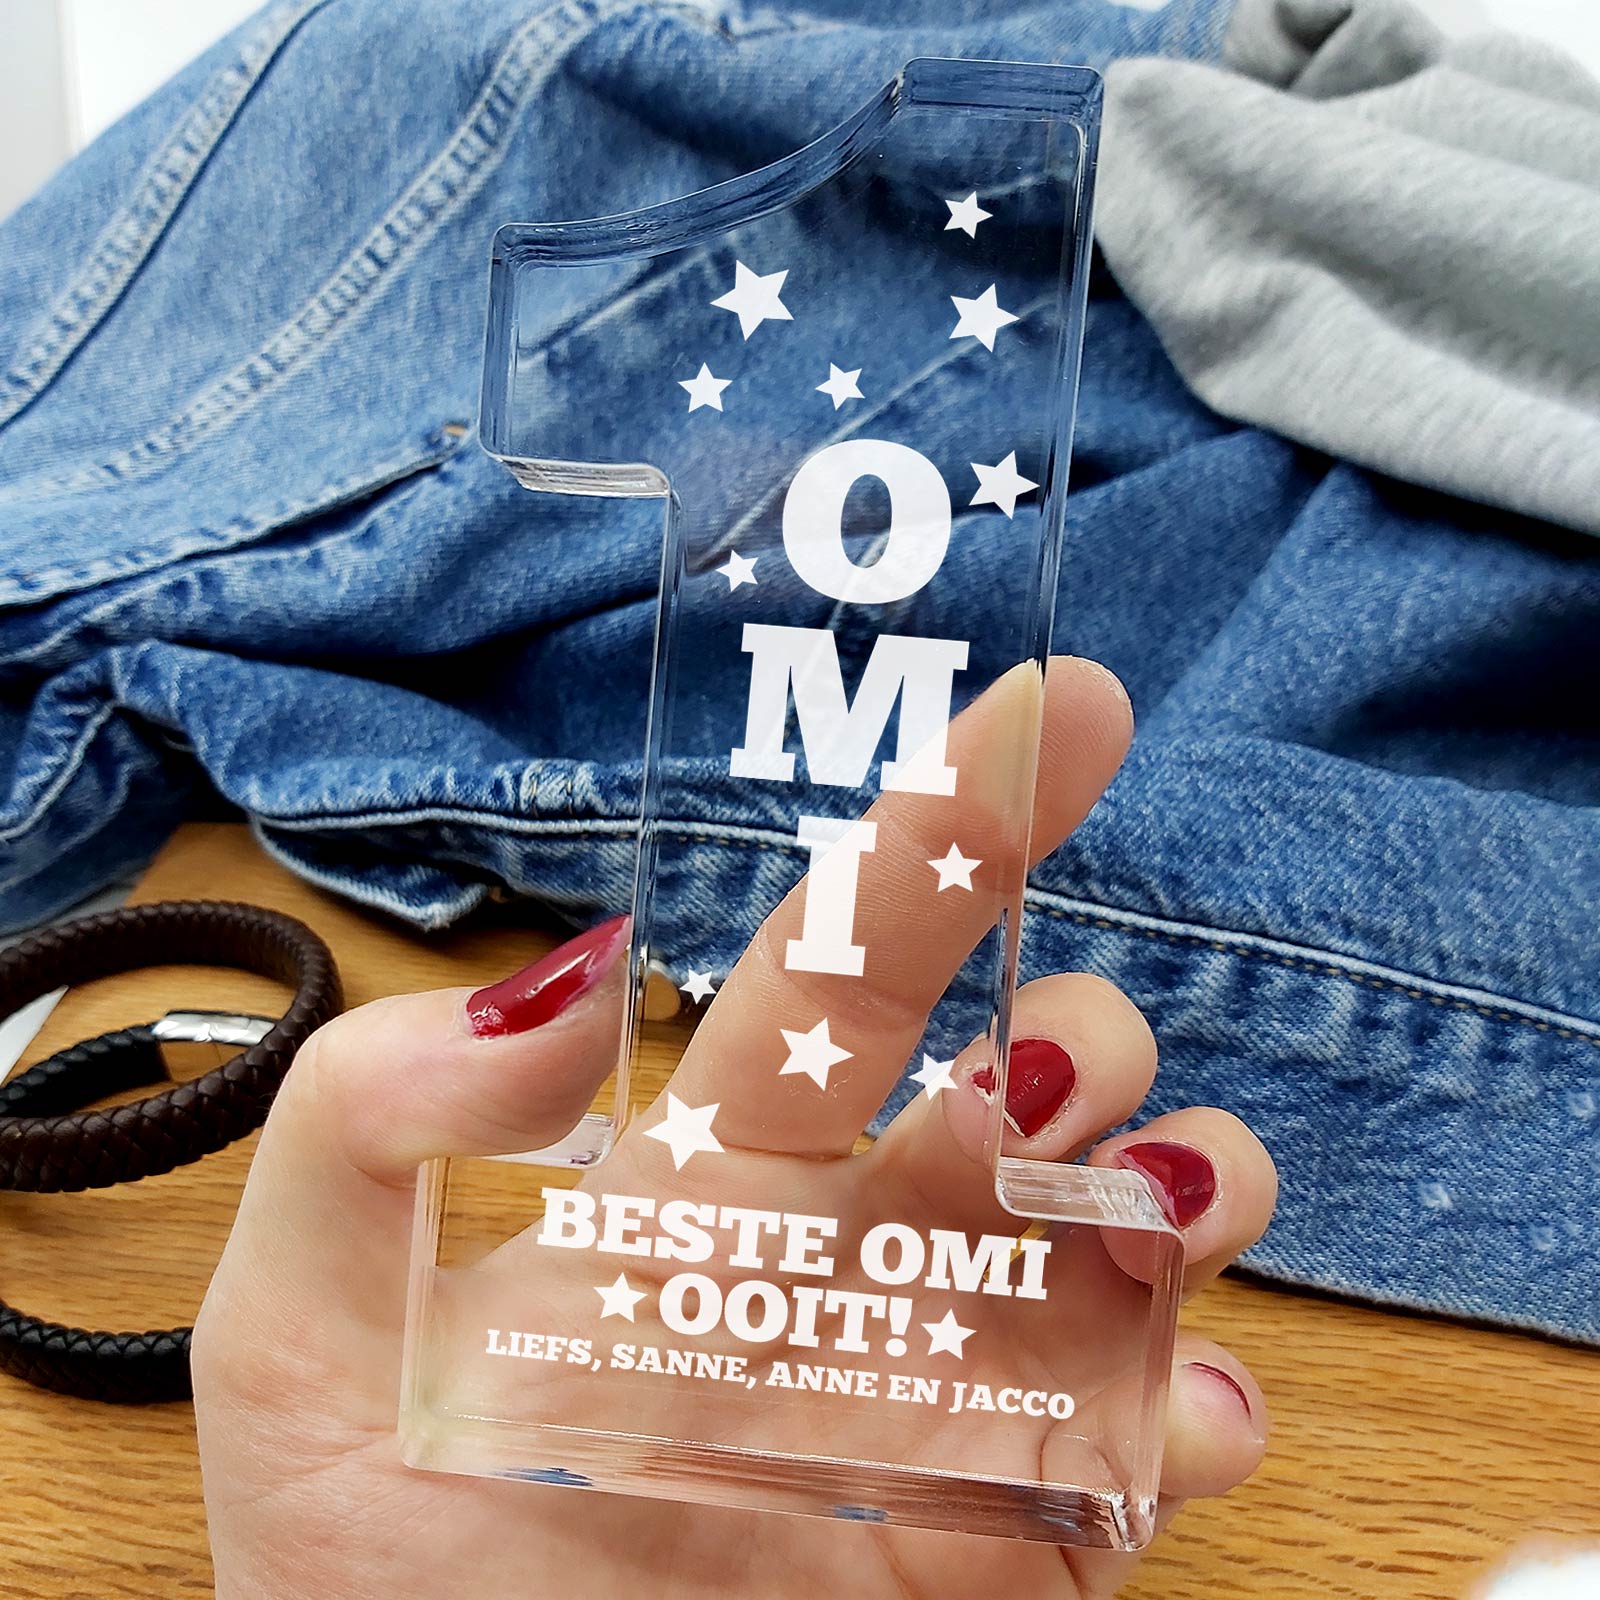 Beste Oma's Ooit #1 Award! - Bella Mia